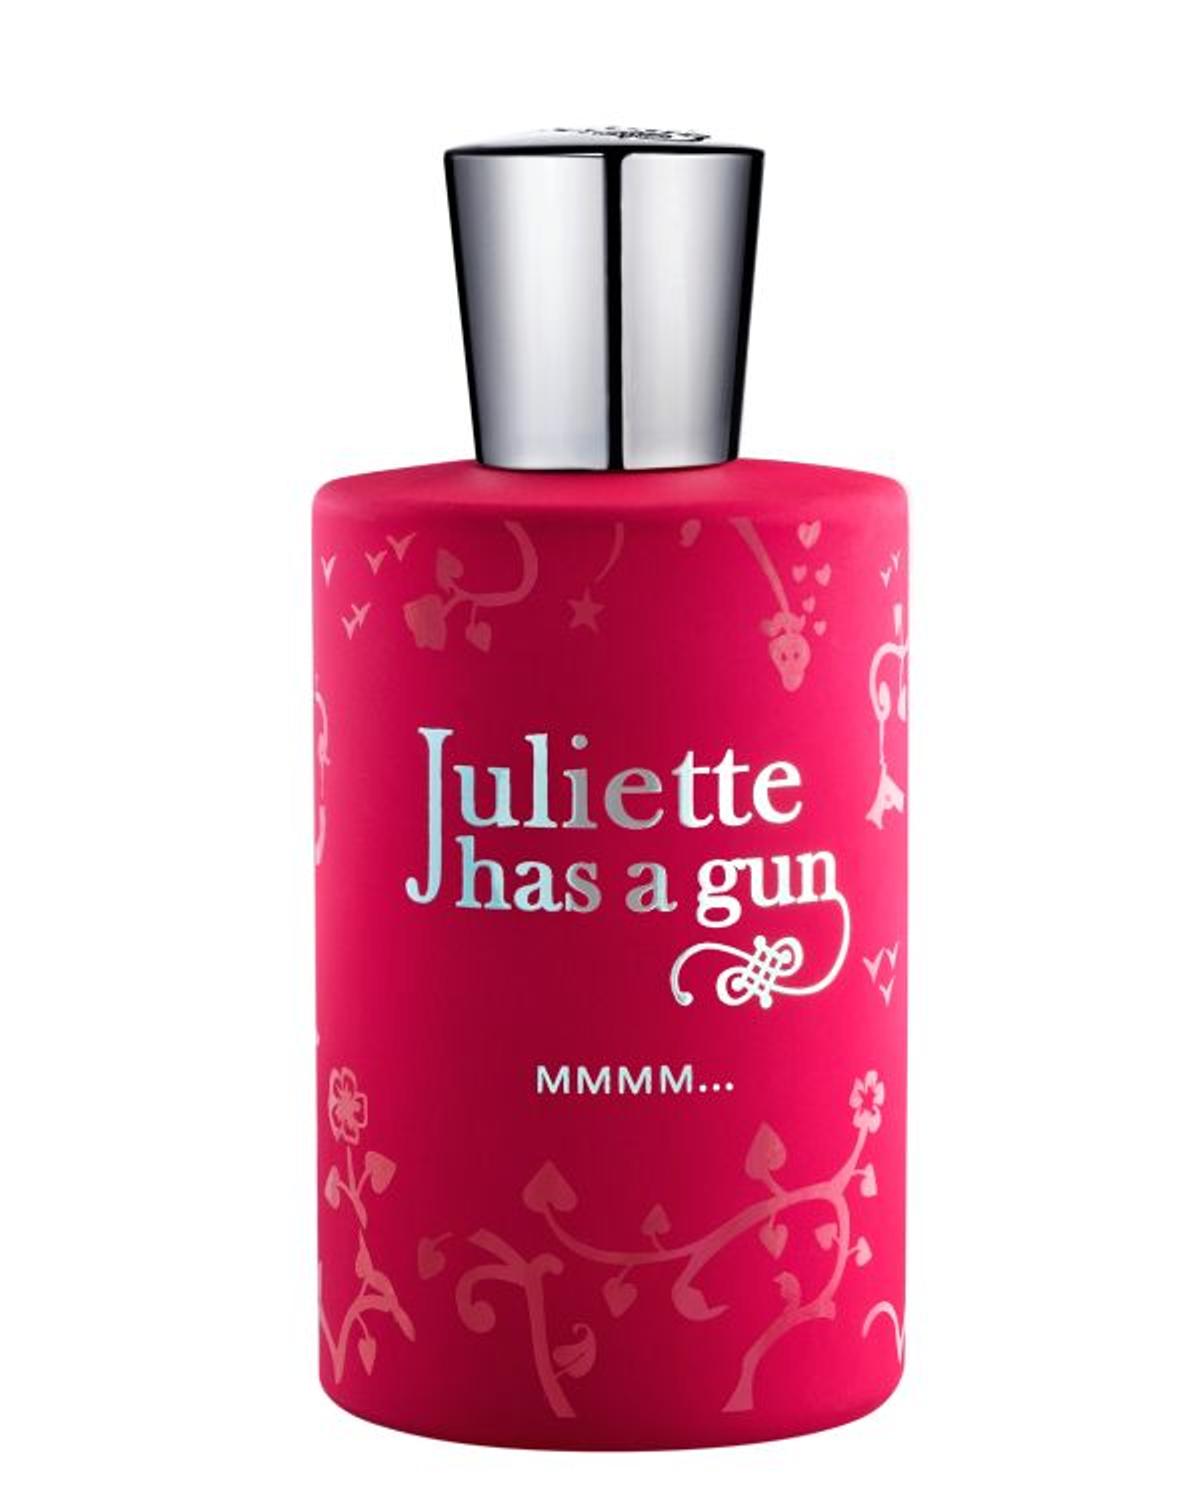 MMMM..., de Juliette has a gun